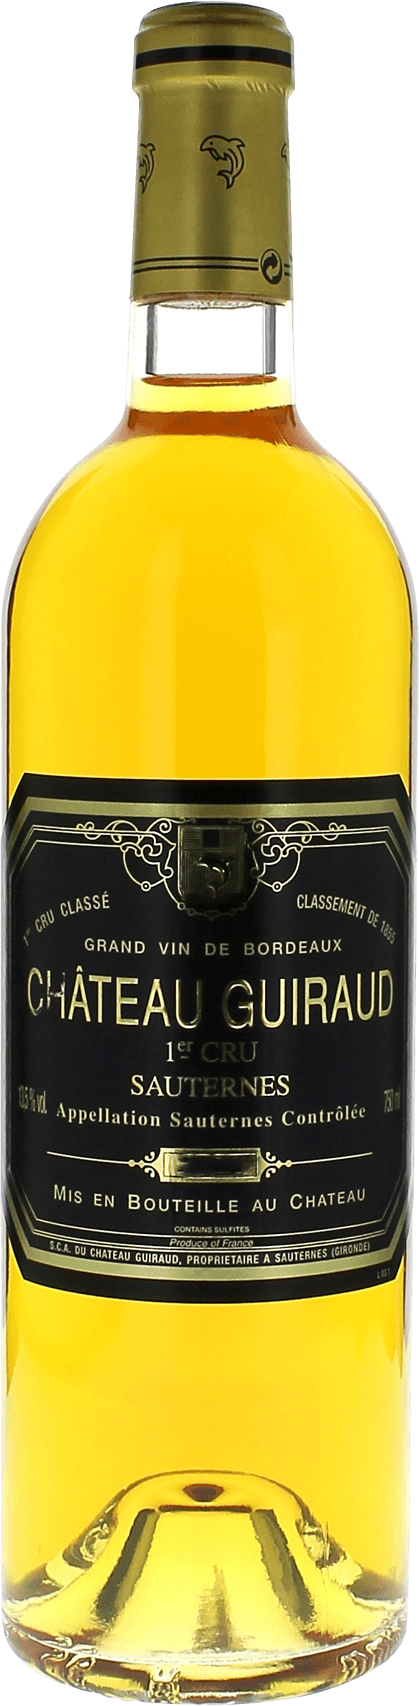 Guiraud (reconditionn au chteau) 1914  Sauternes, Bordeaux blanc